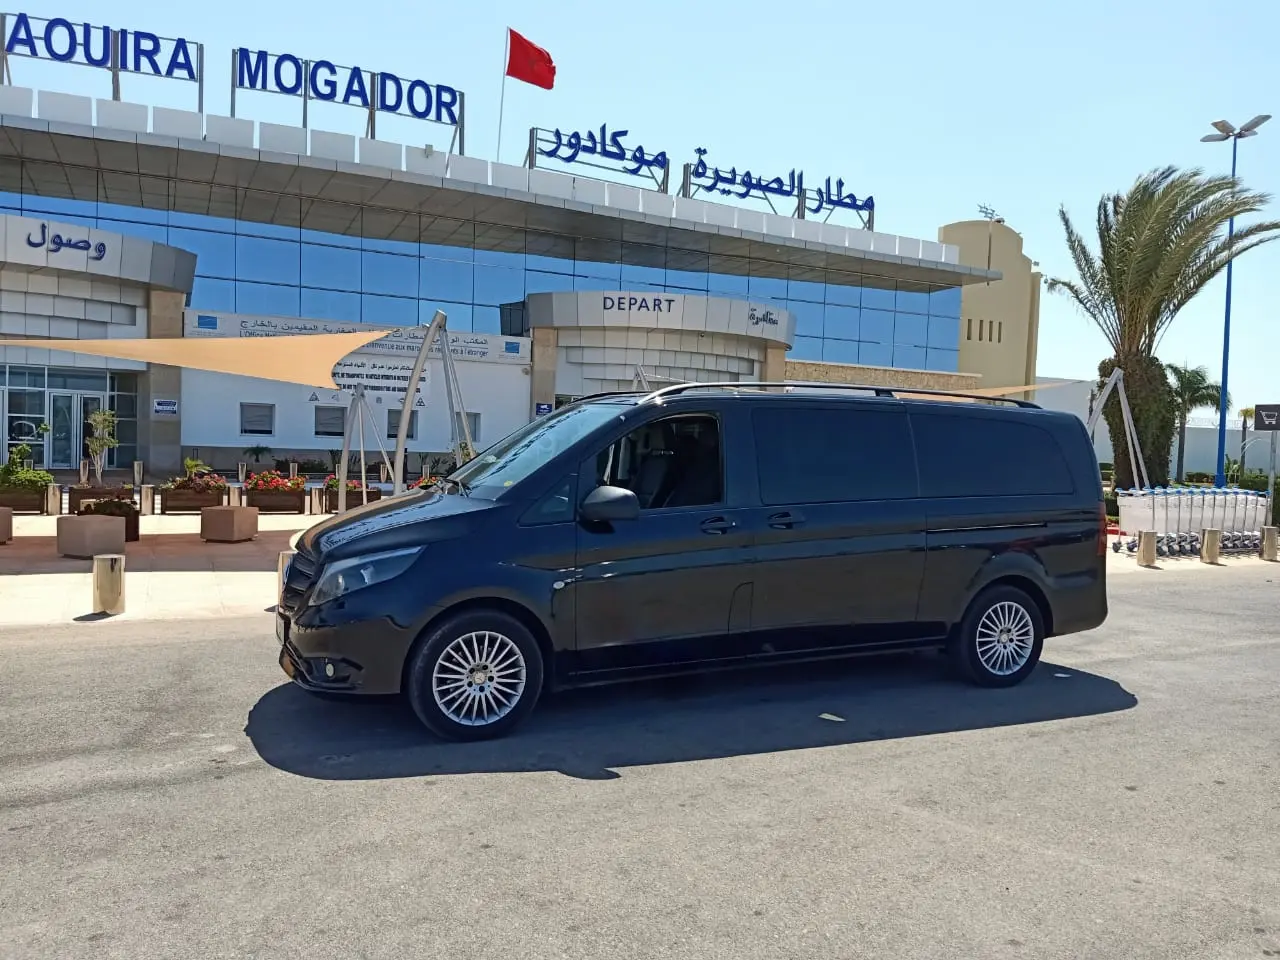 marrakech to essaouira taxi - Cuándo viajar a Essaouira